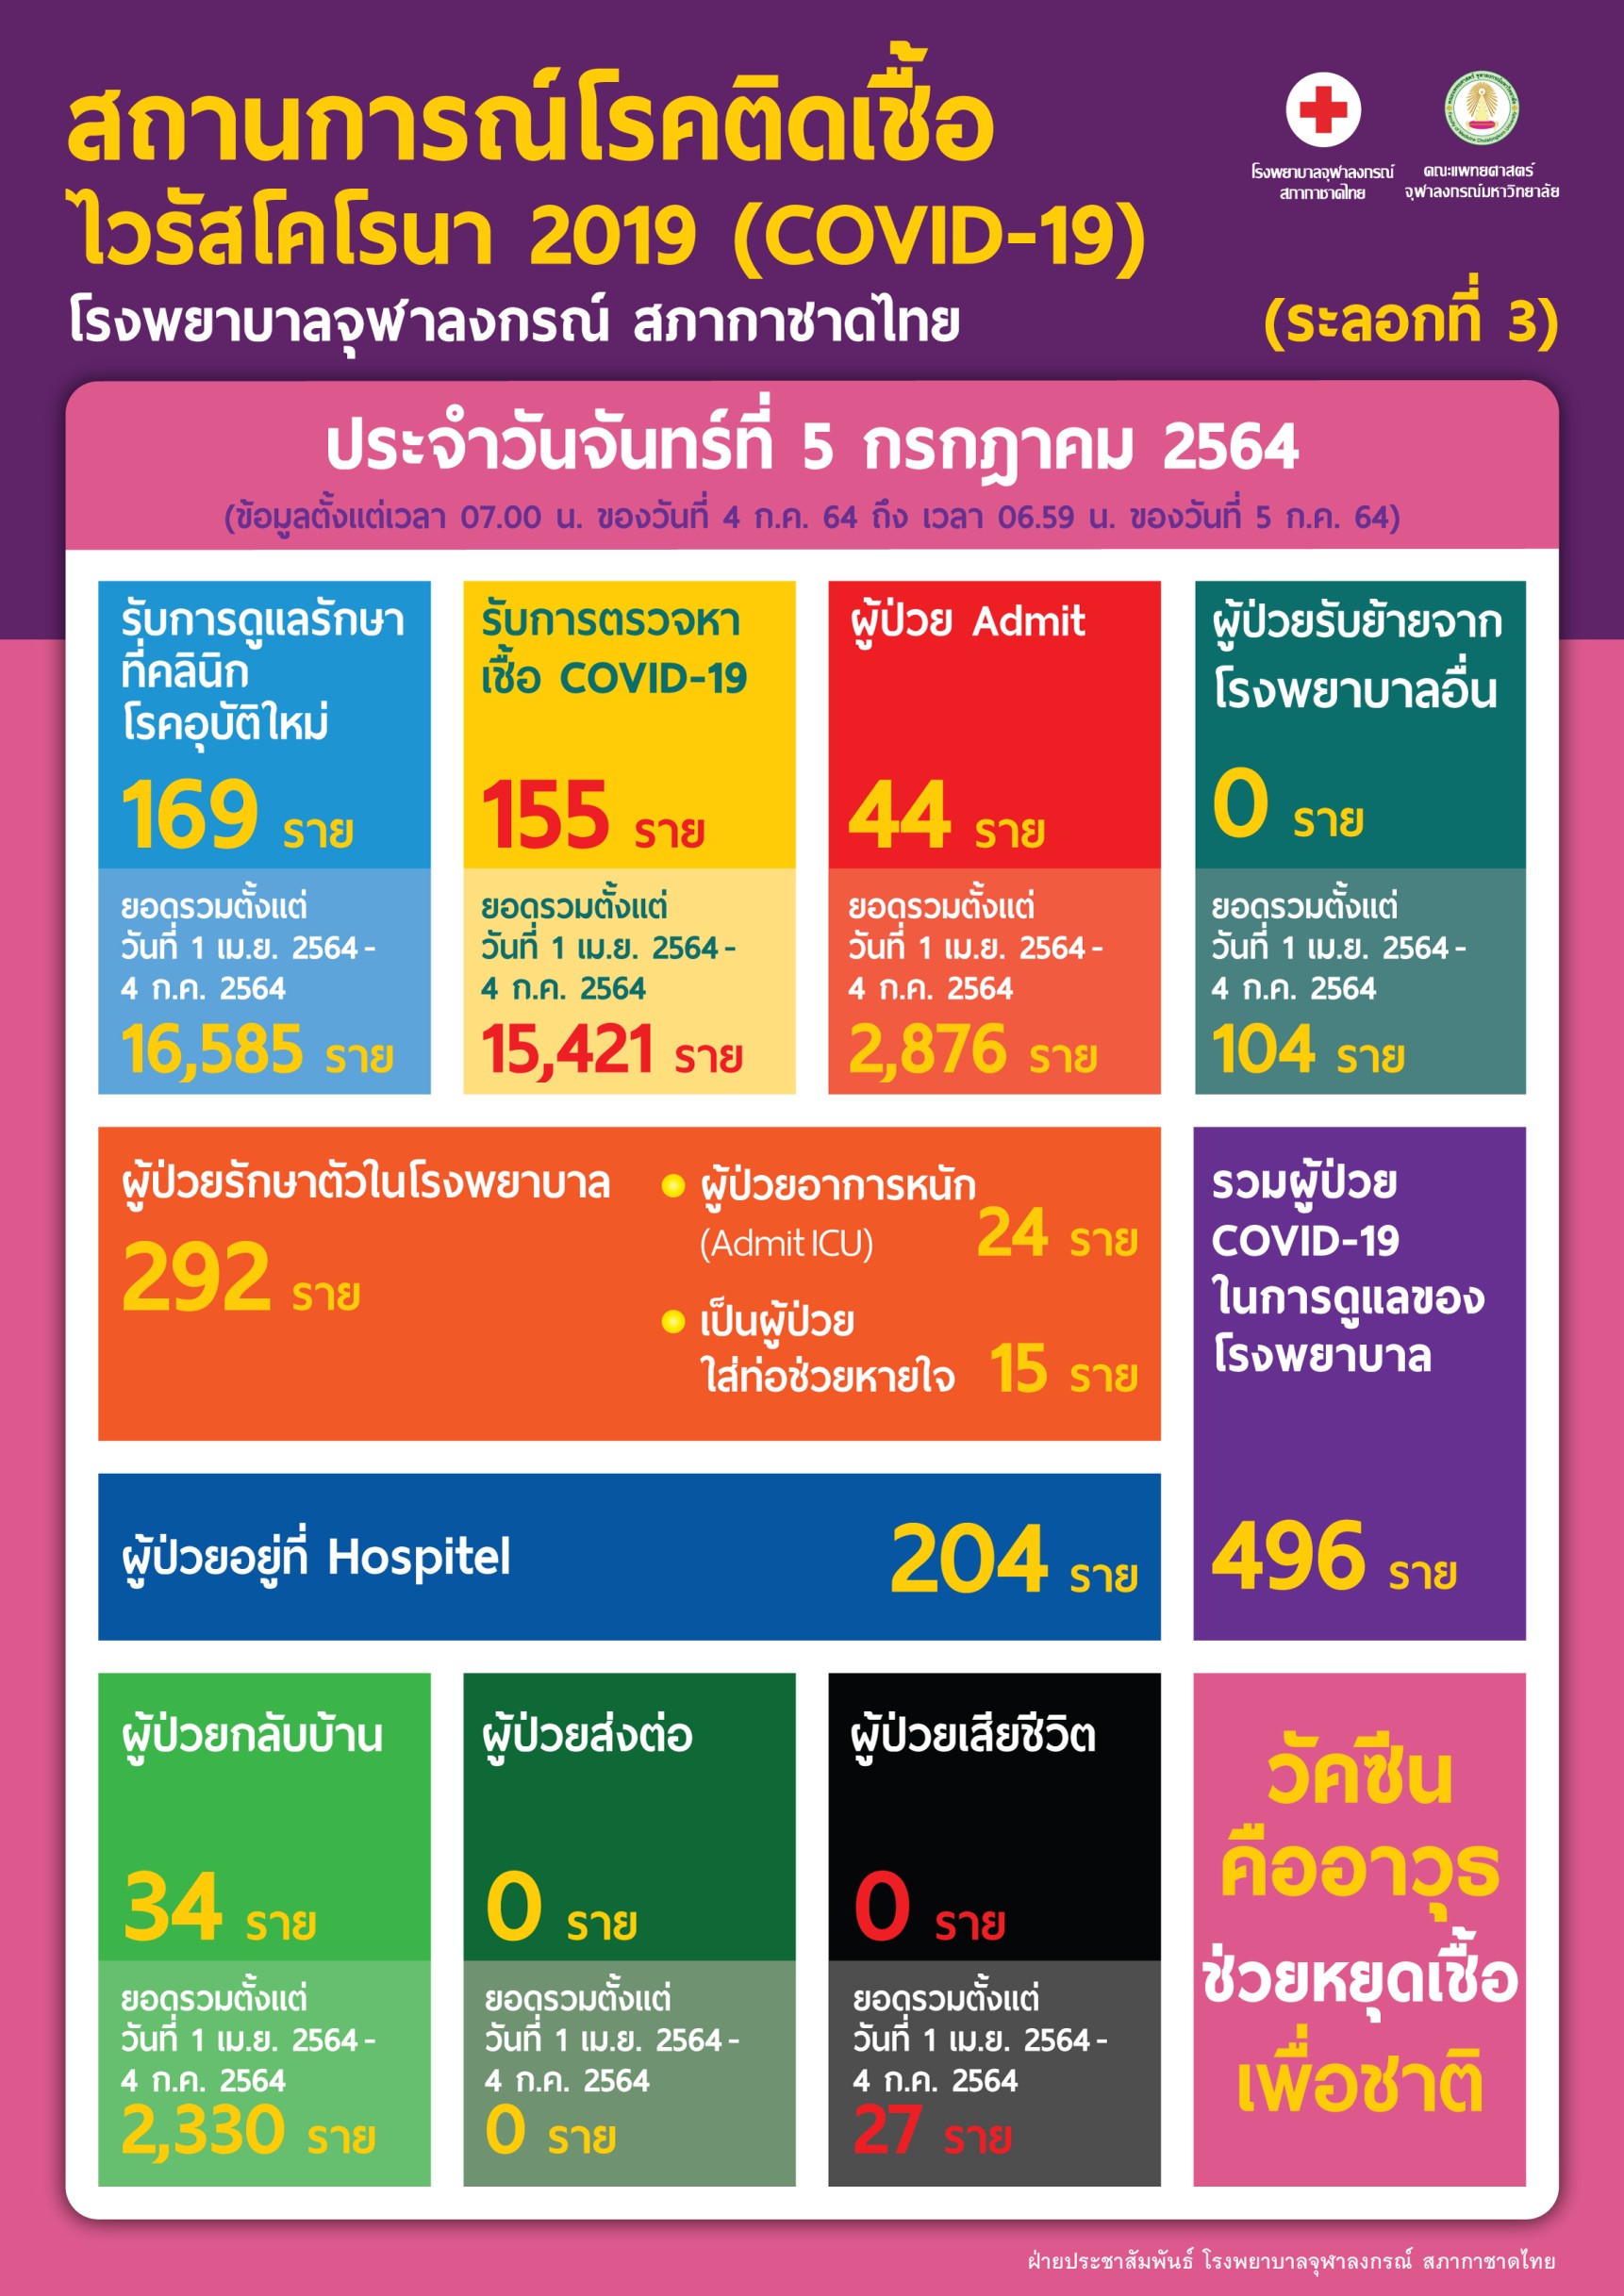 สถานการณ์โรคติดเชื้อไวรัสโคโรนา 2019 (COVID-19)(ระลอกที่ 3) โรงพยาบาลจุฬาลงกรณ์ สภากาชาดไทย ประจำวันจันทร์ที่ 5 กรกฎาคม 2564